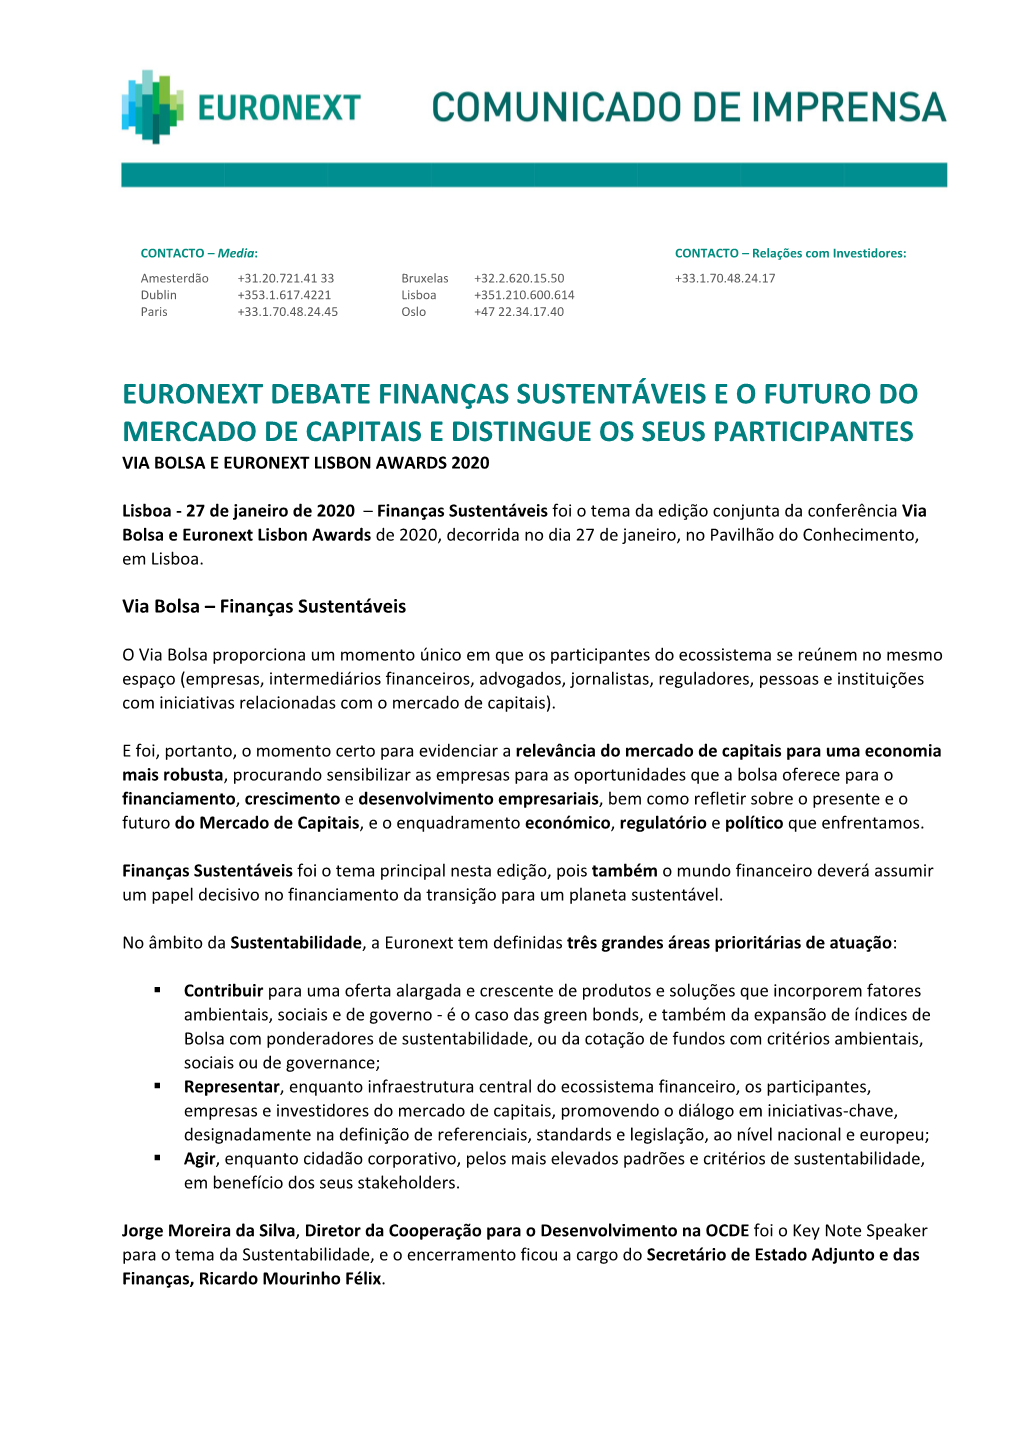 Euronext Debate Finanças Sustentáveis E O Futuro Do